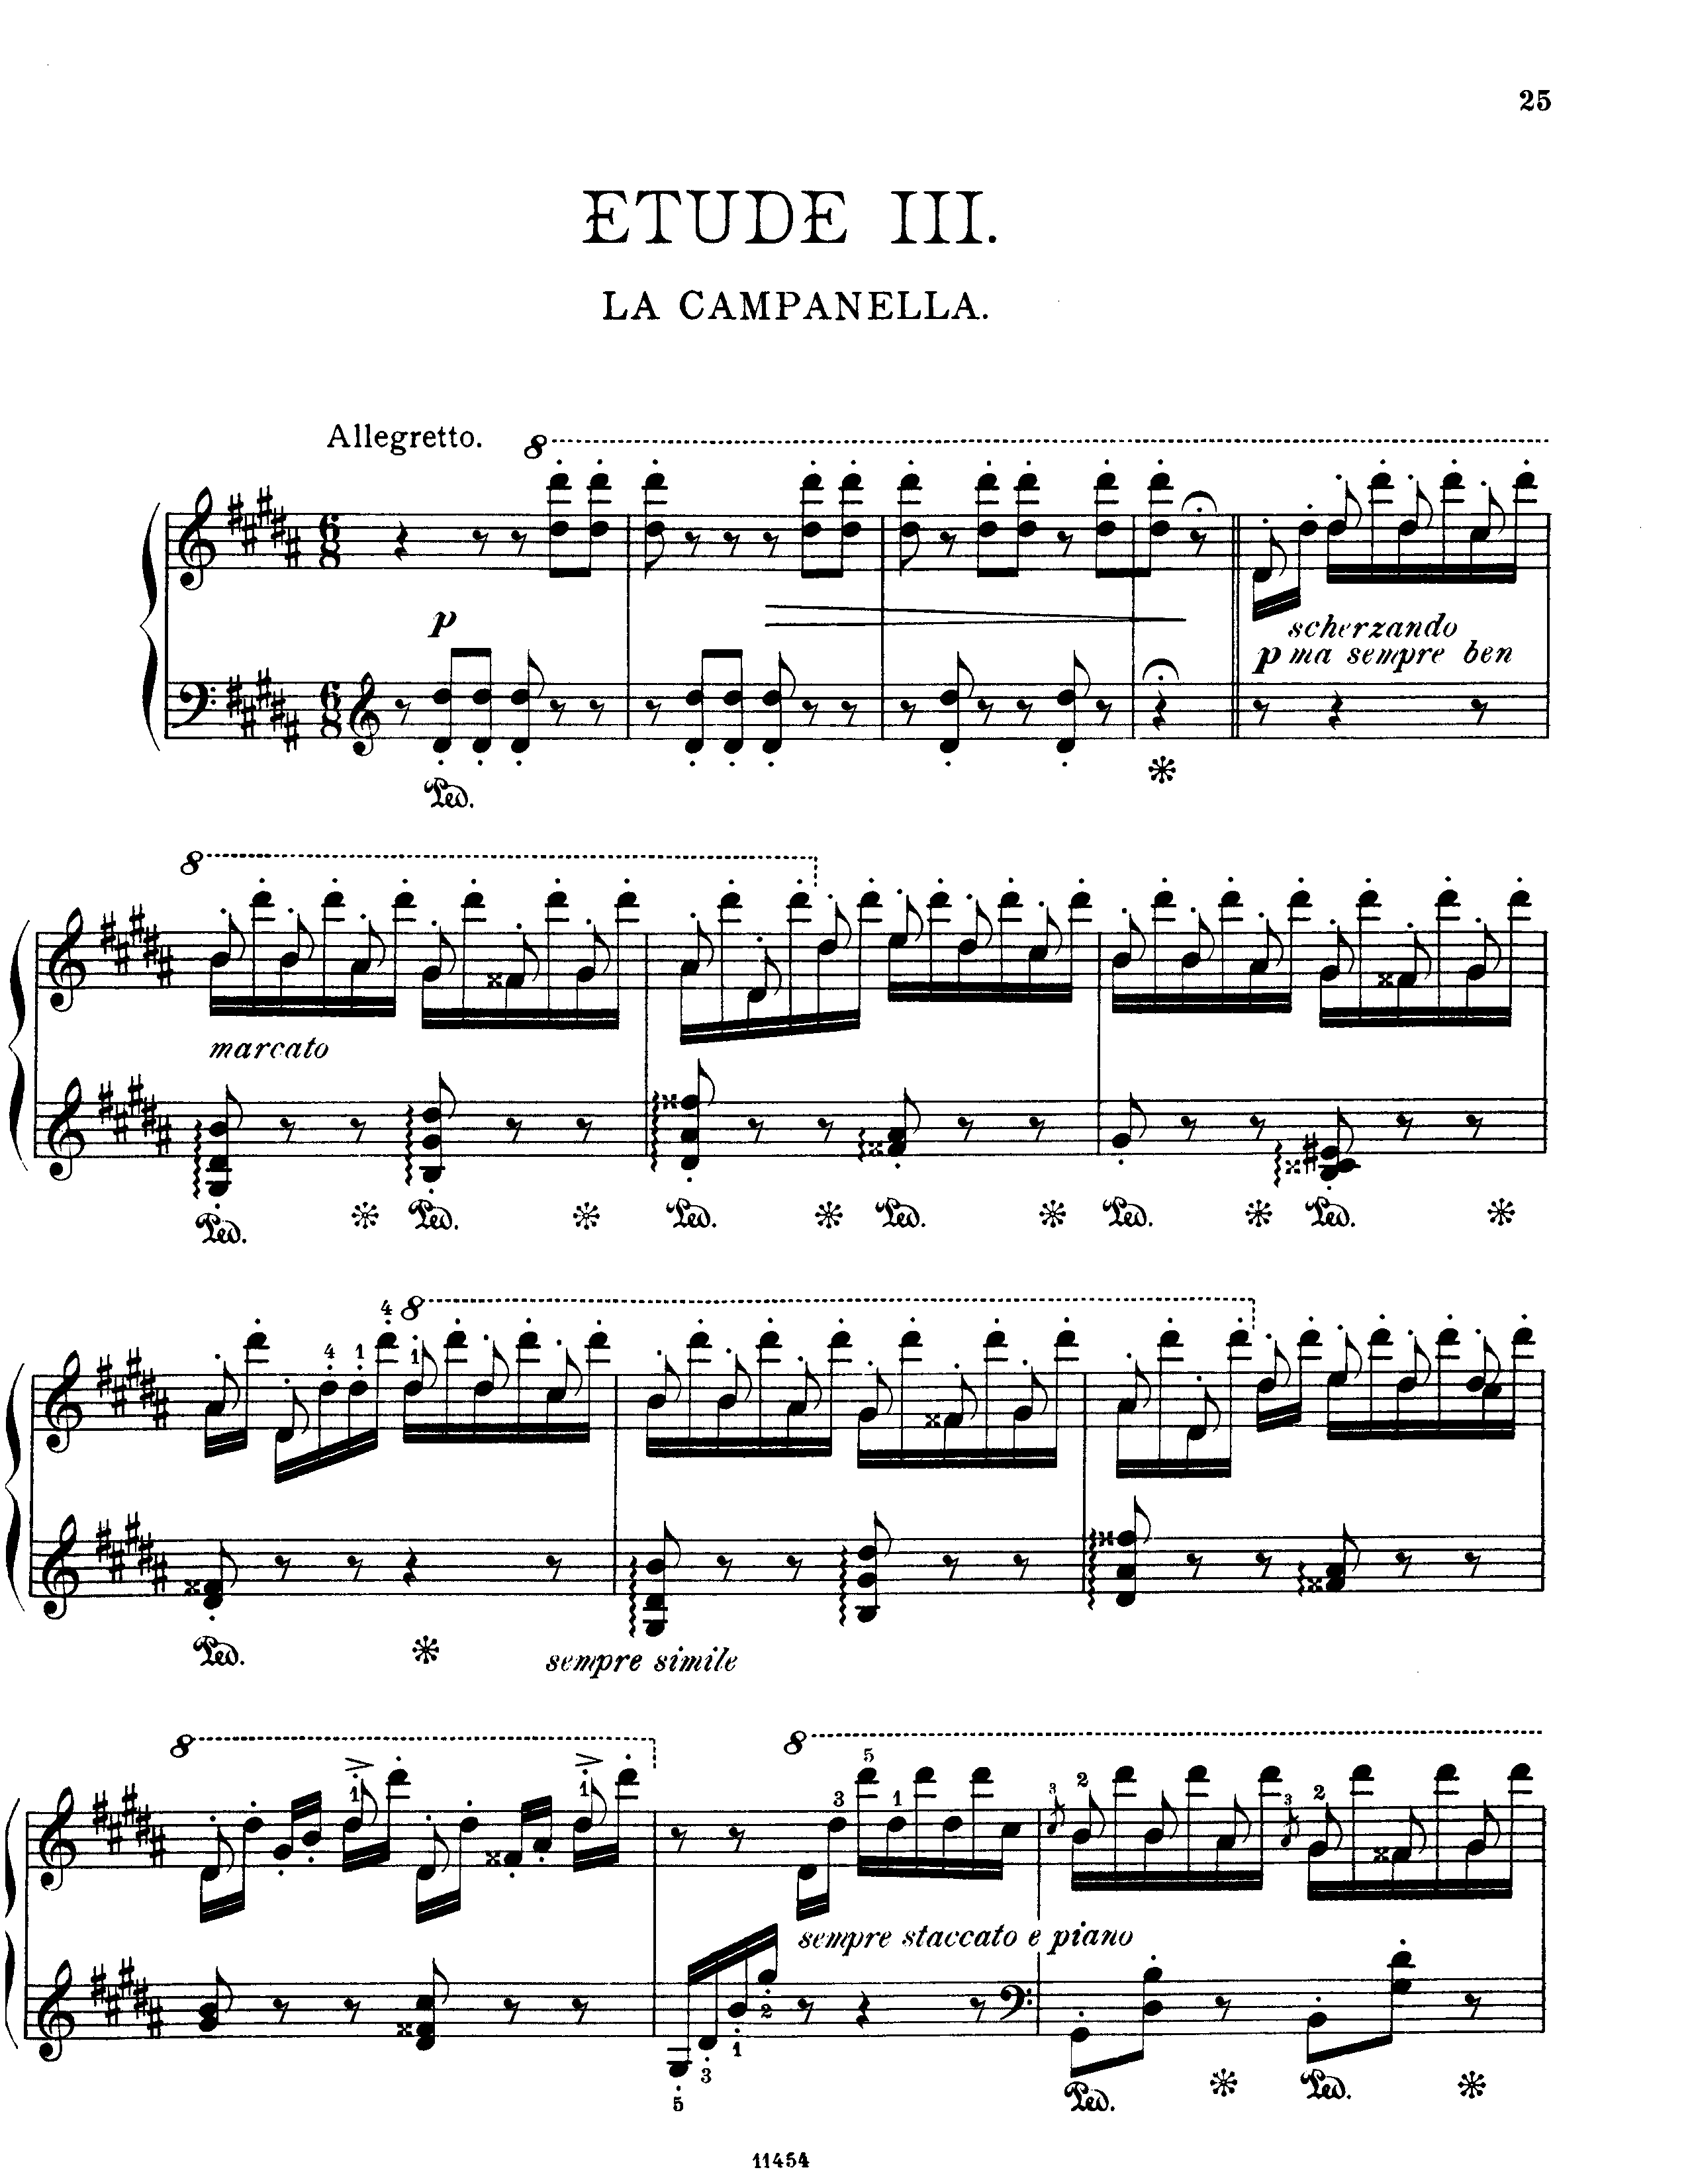 La campanella in G-Sharp Minor (From Grandes études de Paganini, S. 141 / 3) Score